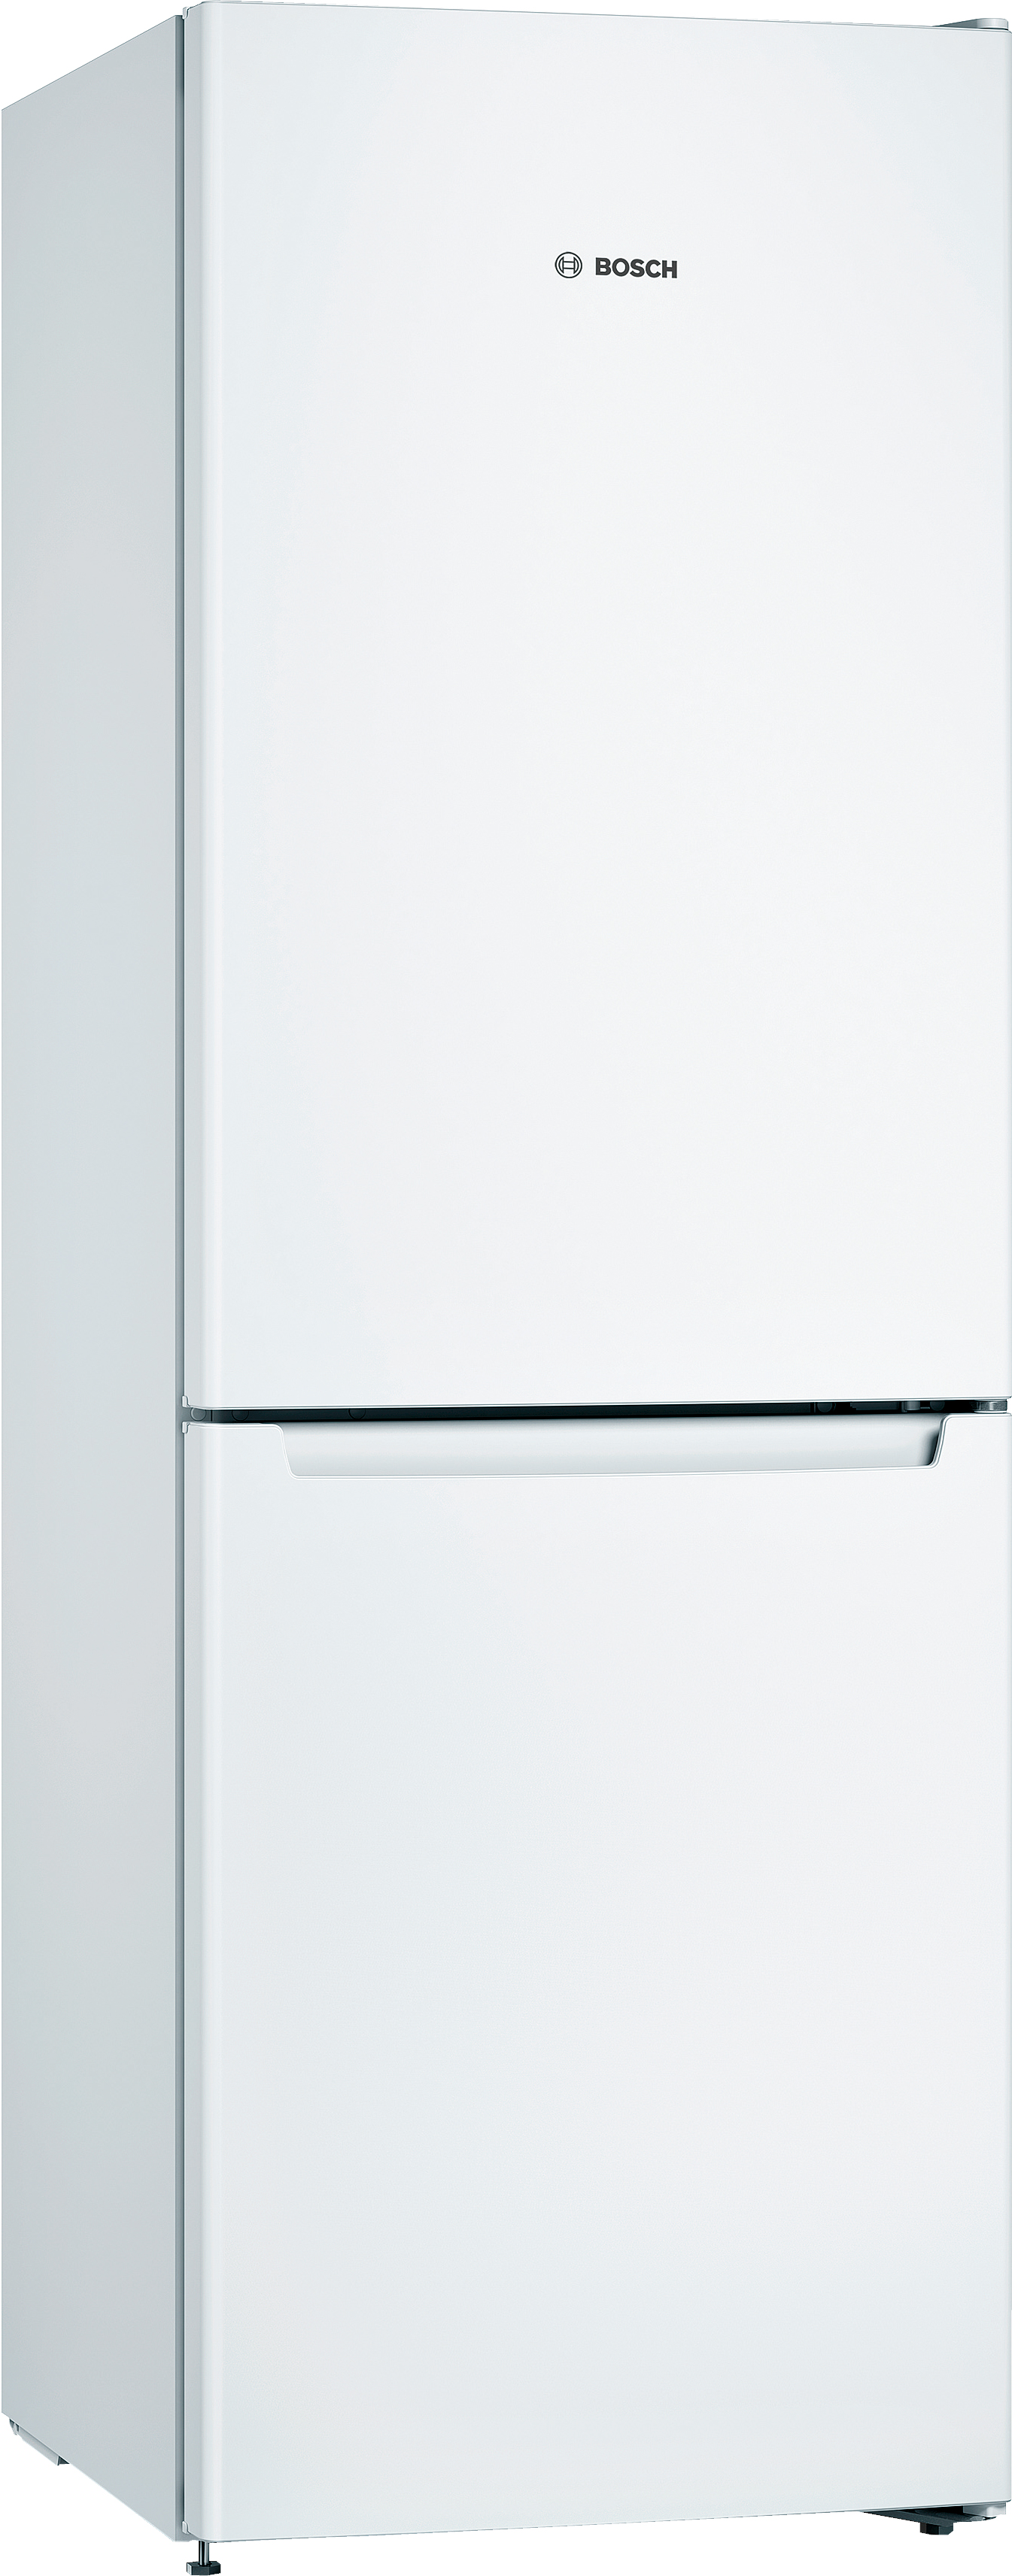 Инструкция холодильник Bosch KGN33NW206